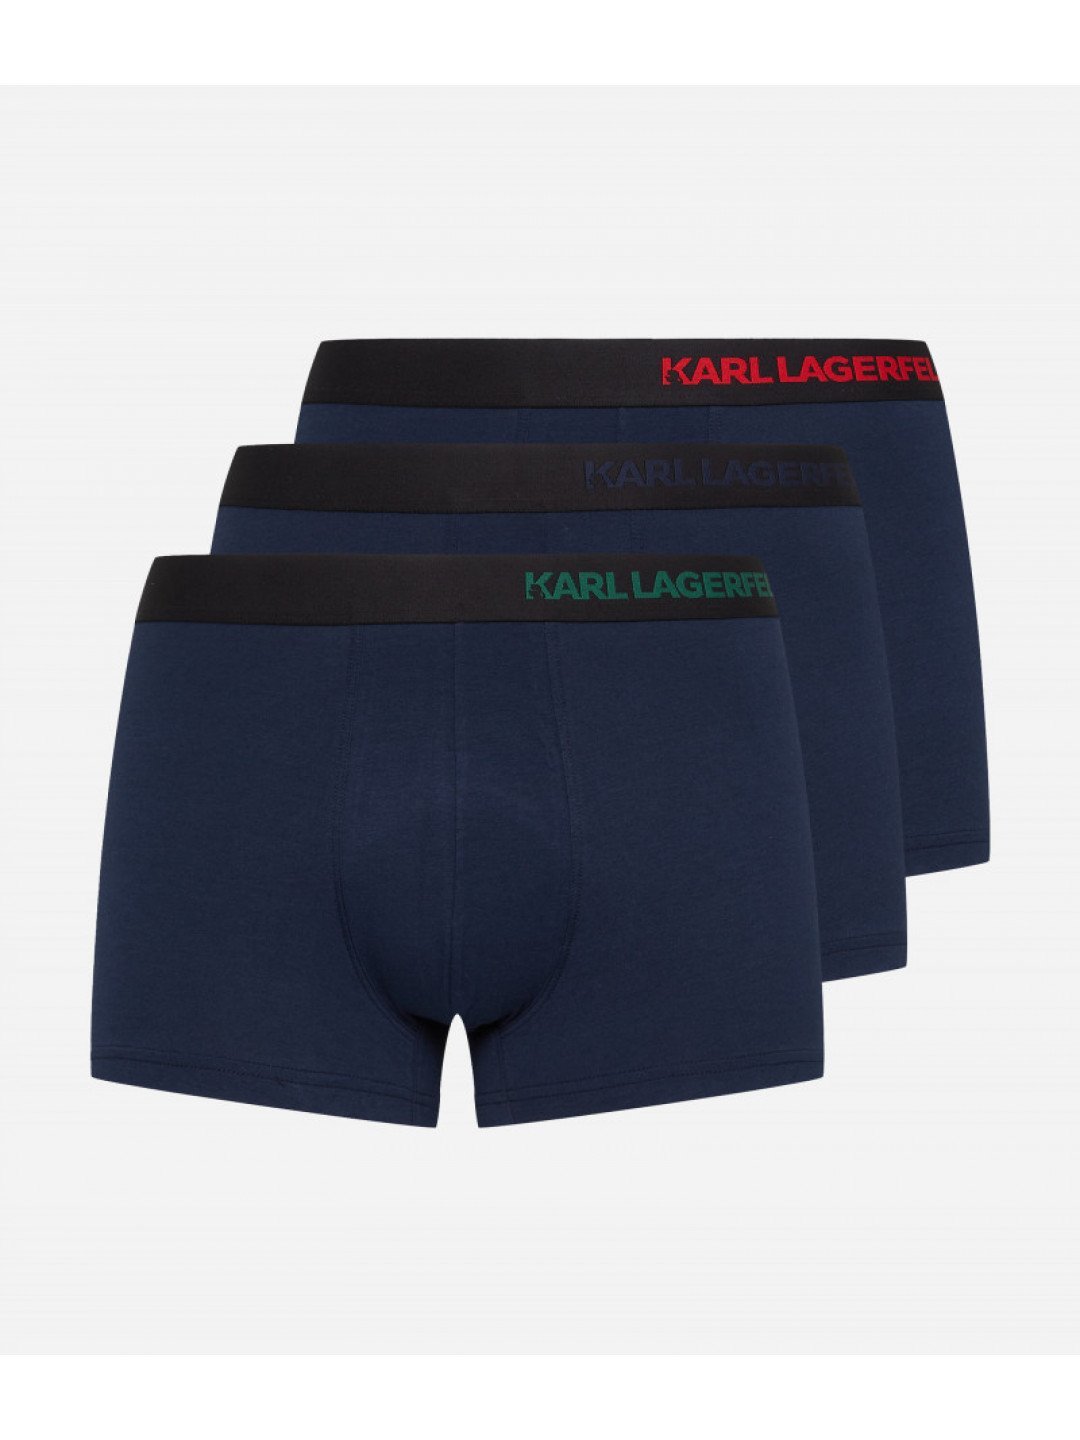 Spodní prádlo karl lagerfeld hip logo trunk 3-pack modrá m